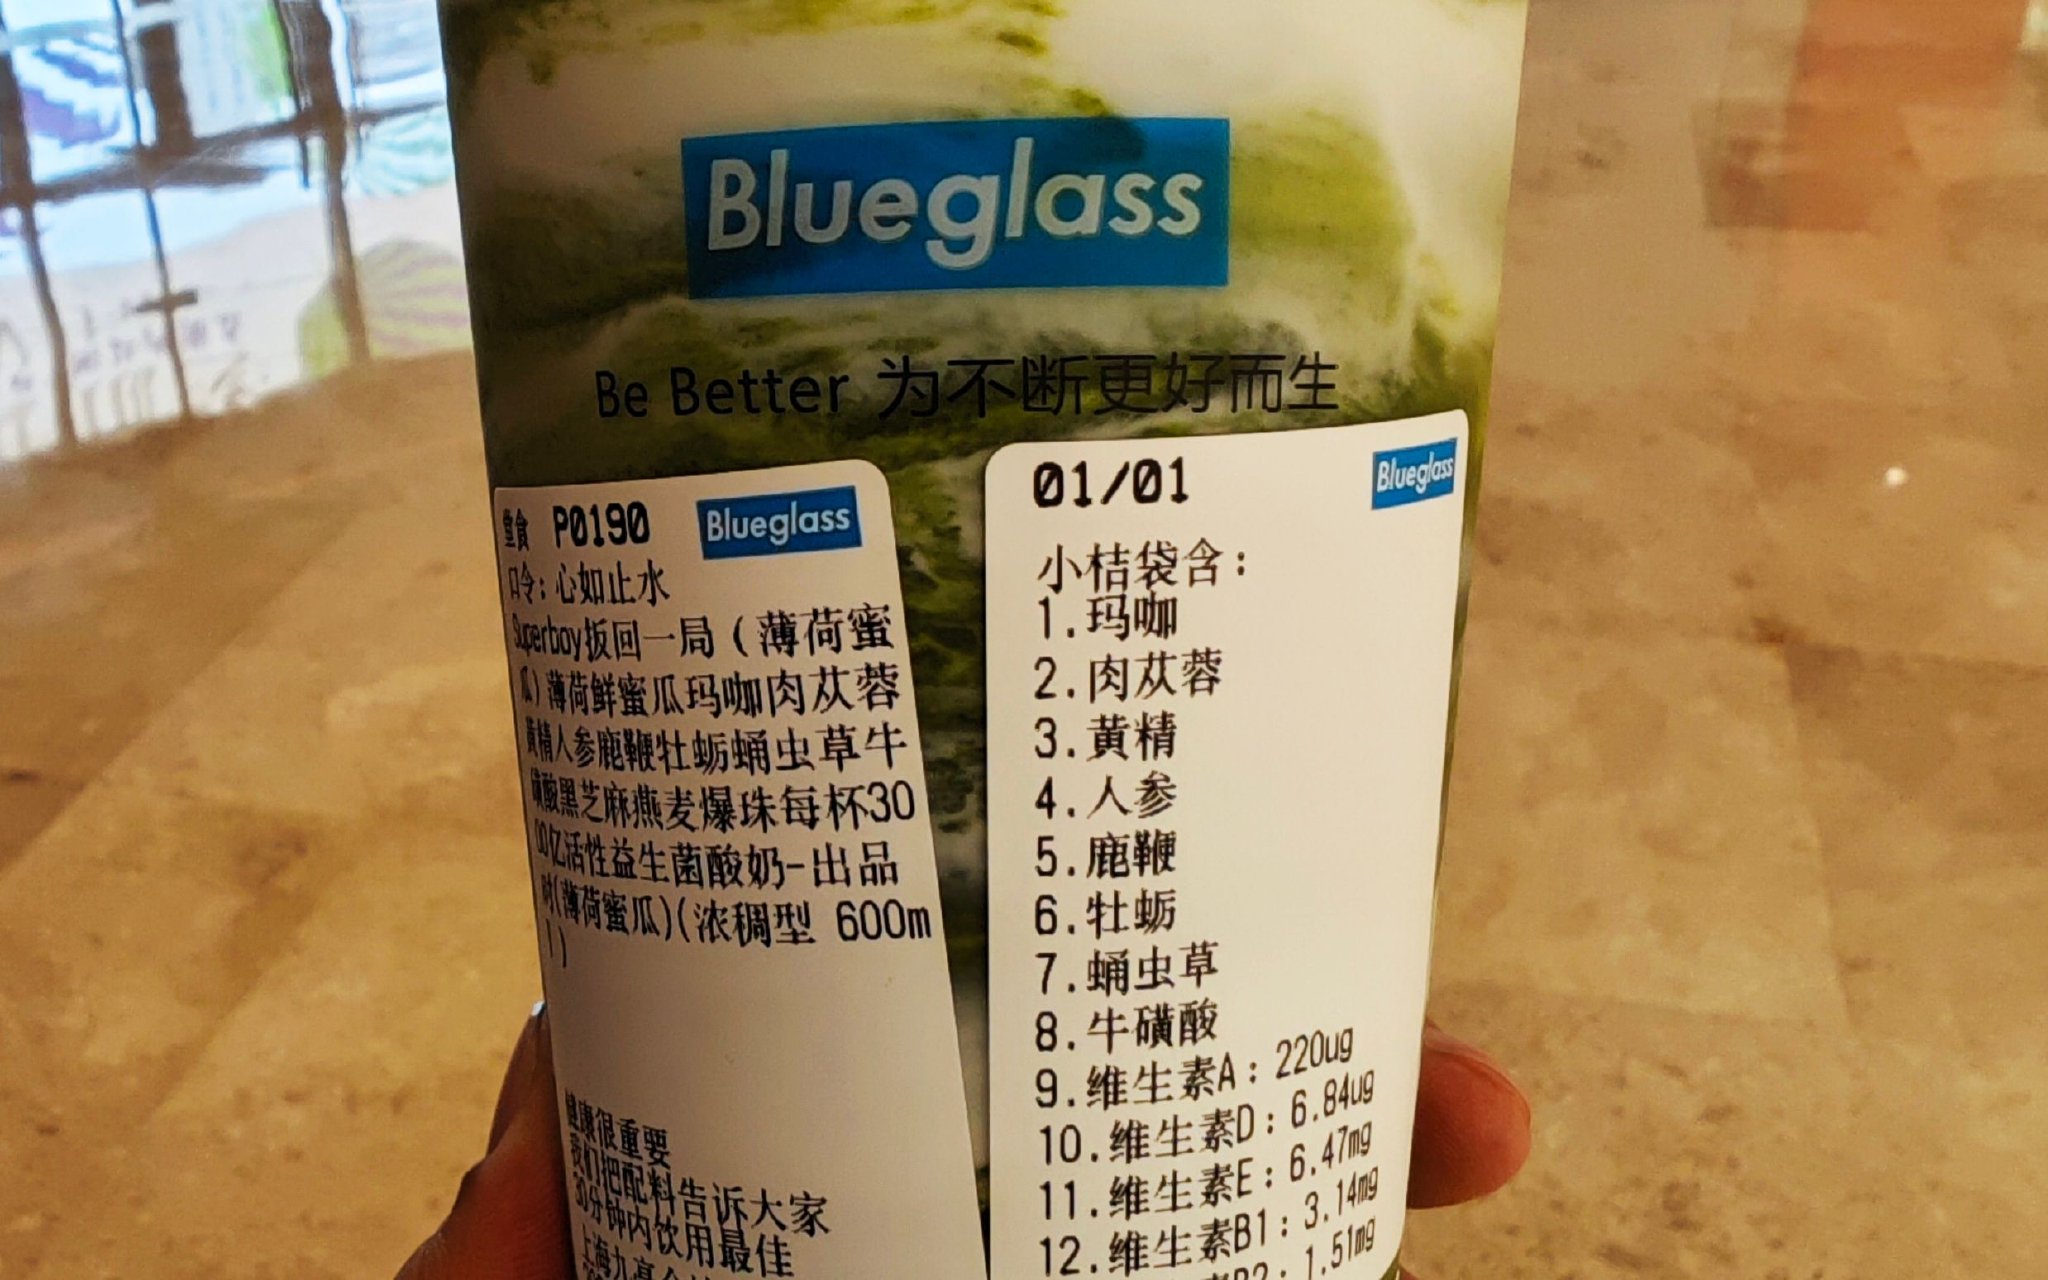 Blueglass杯身標籤上註明所含成分。 新京報記者俞金旻攝